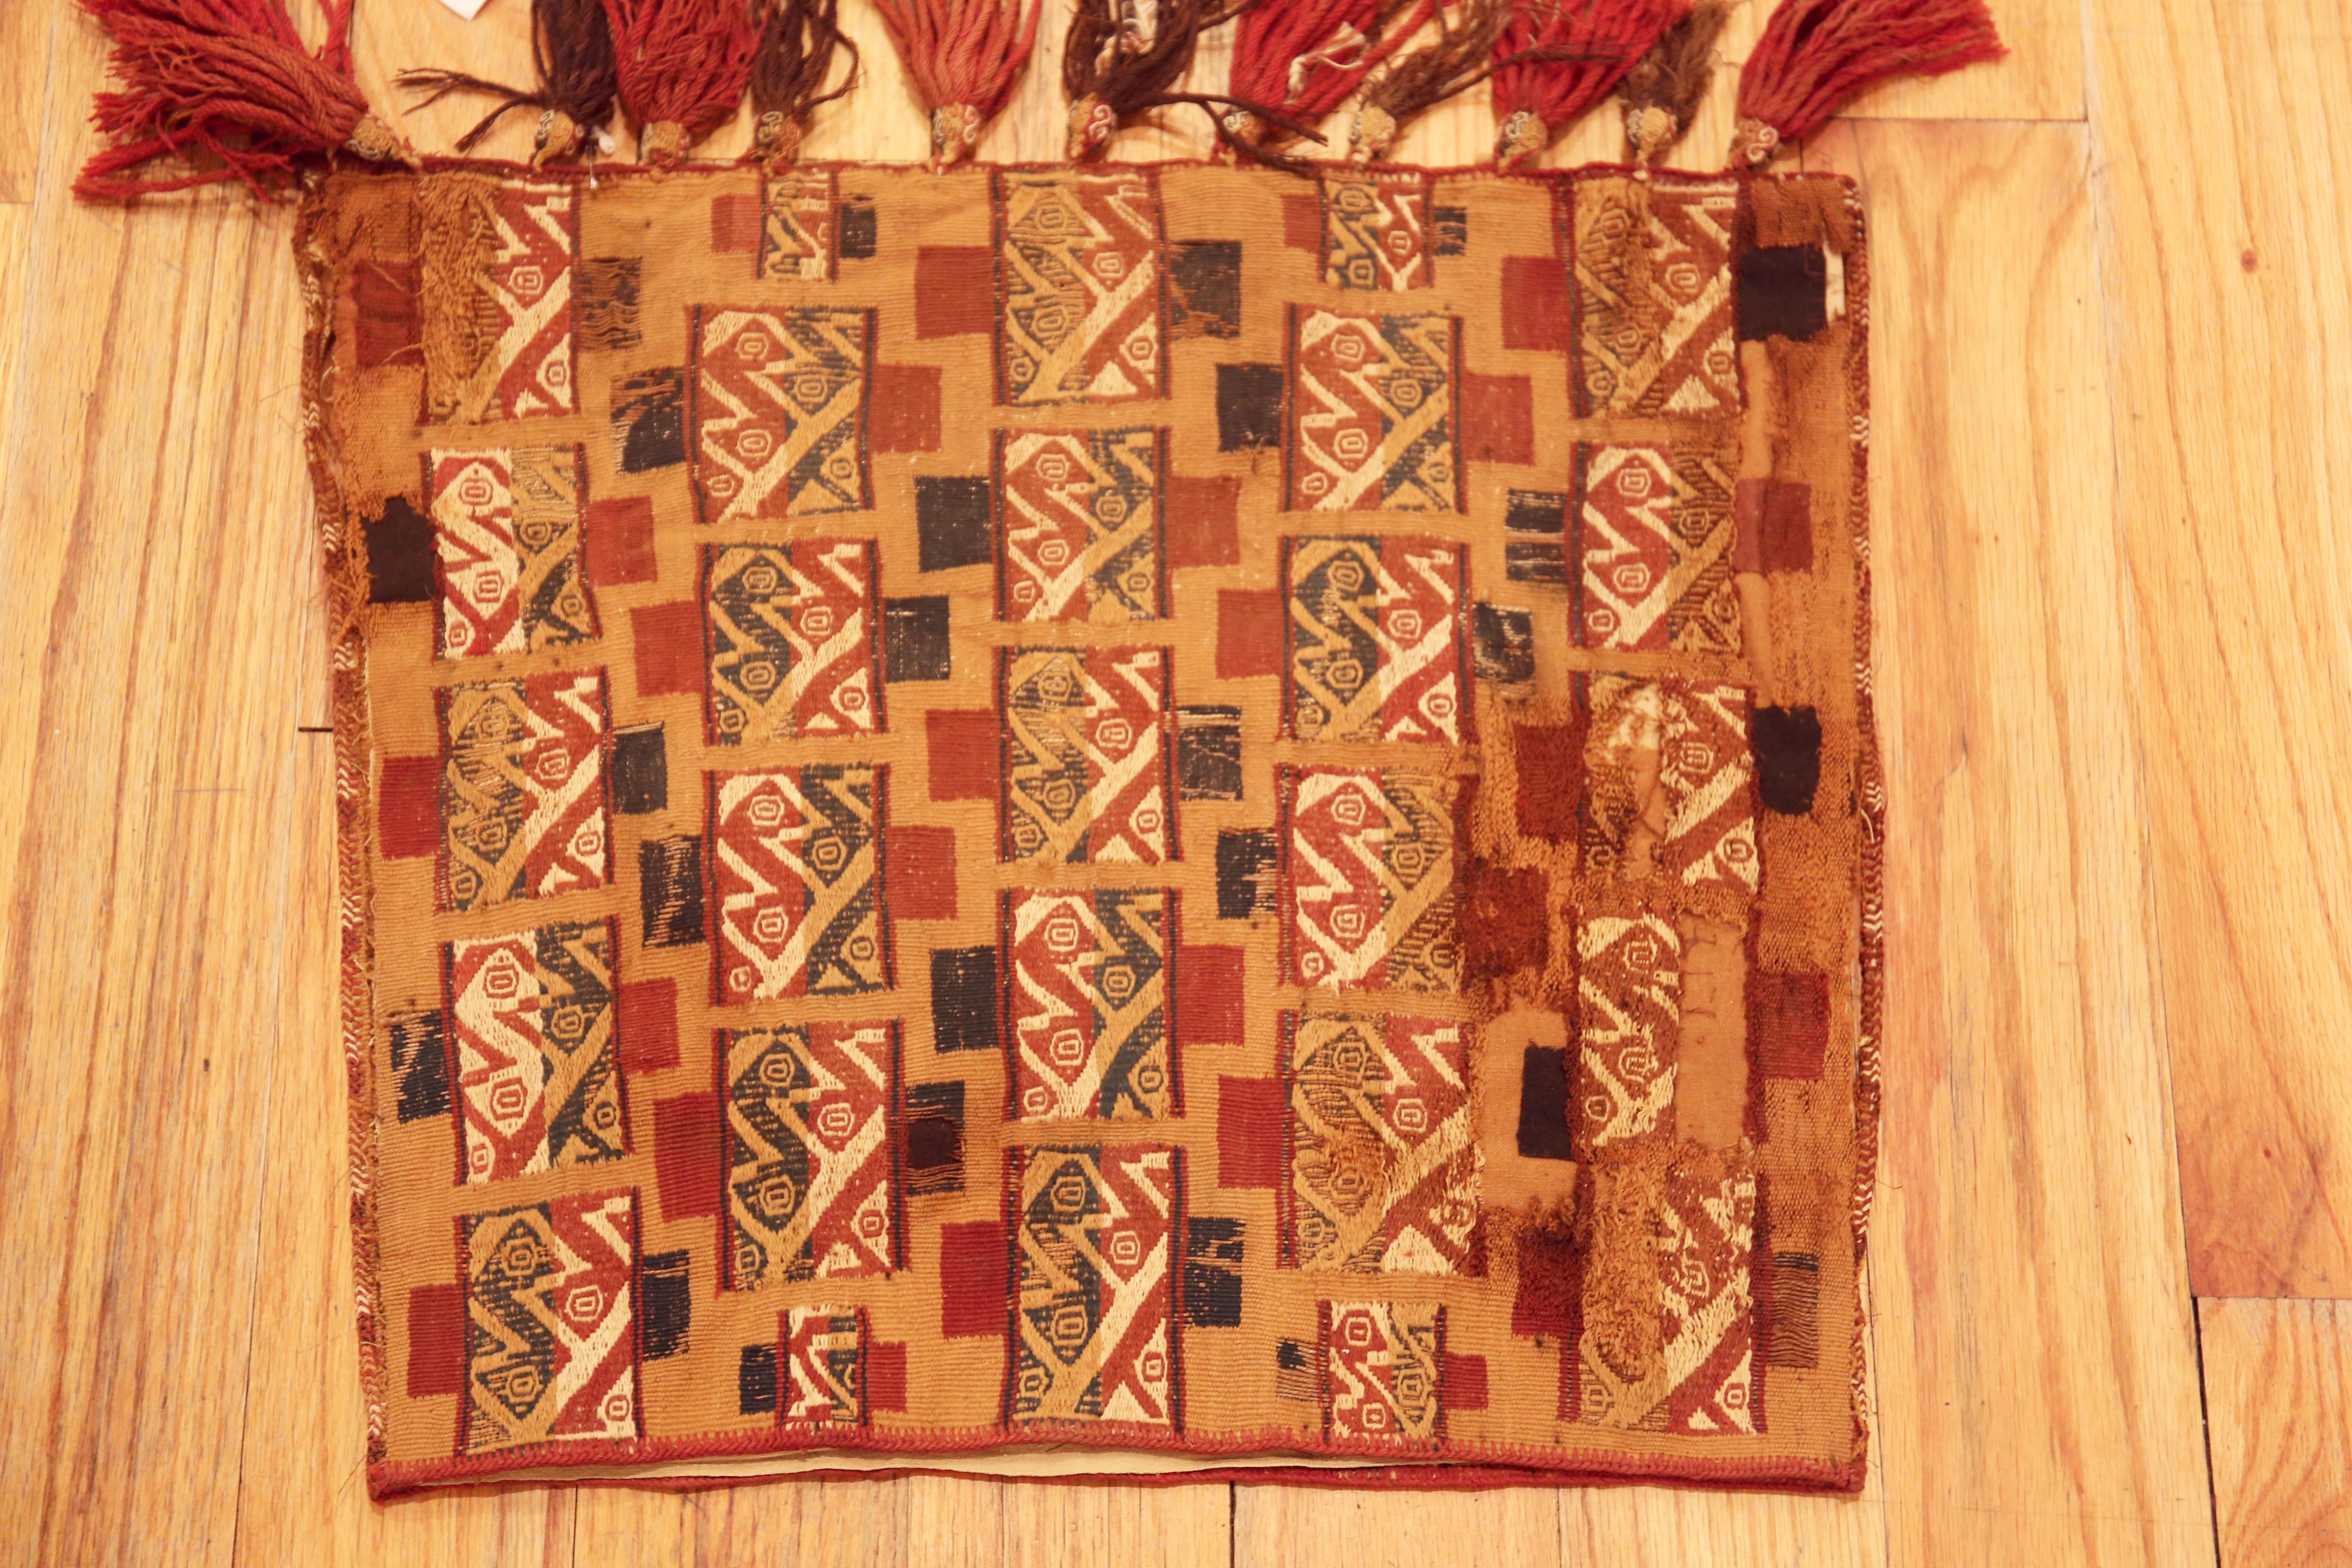 Laine Incroyable textile péruvien du début du 16e siècle 1'2